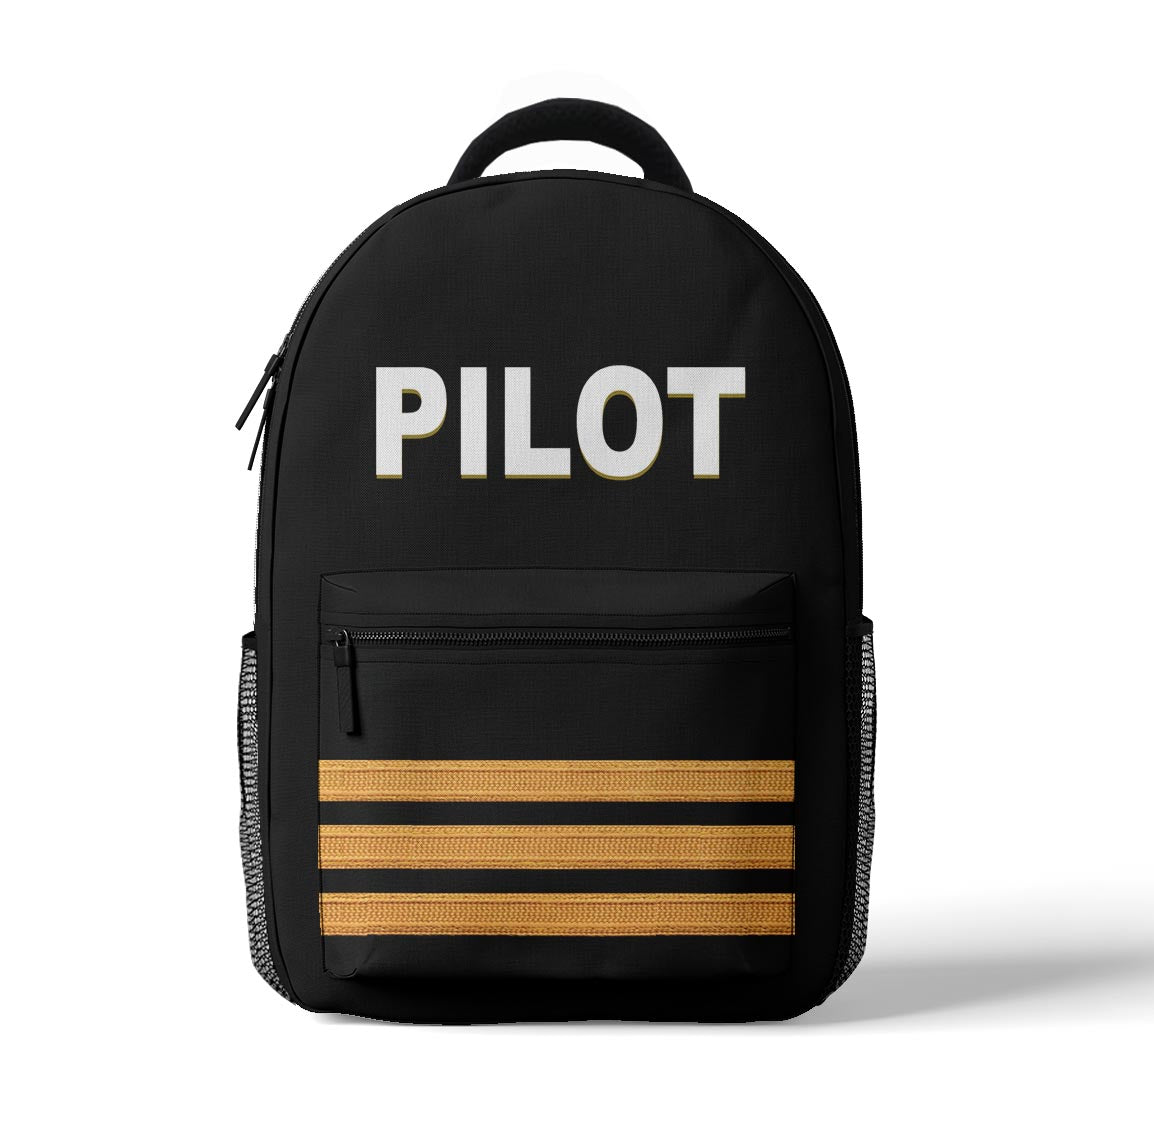 PILOT & Epaulettes (2,3,4 Lines) Designed 3D Backpacks